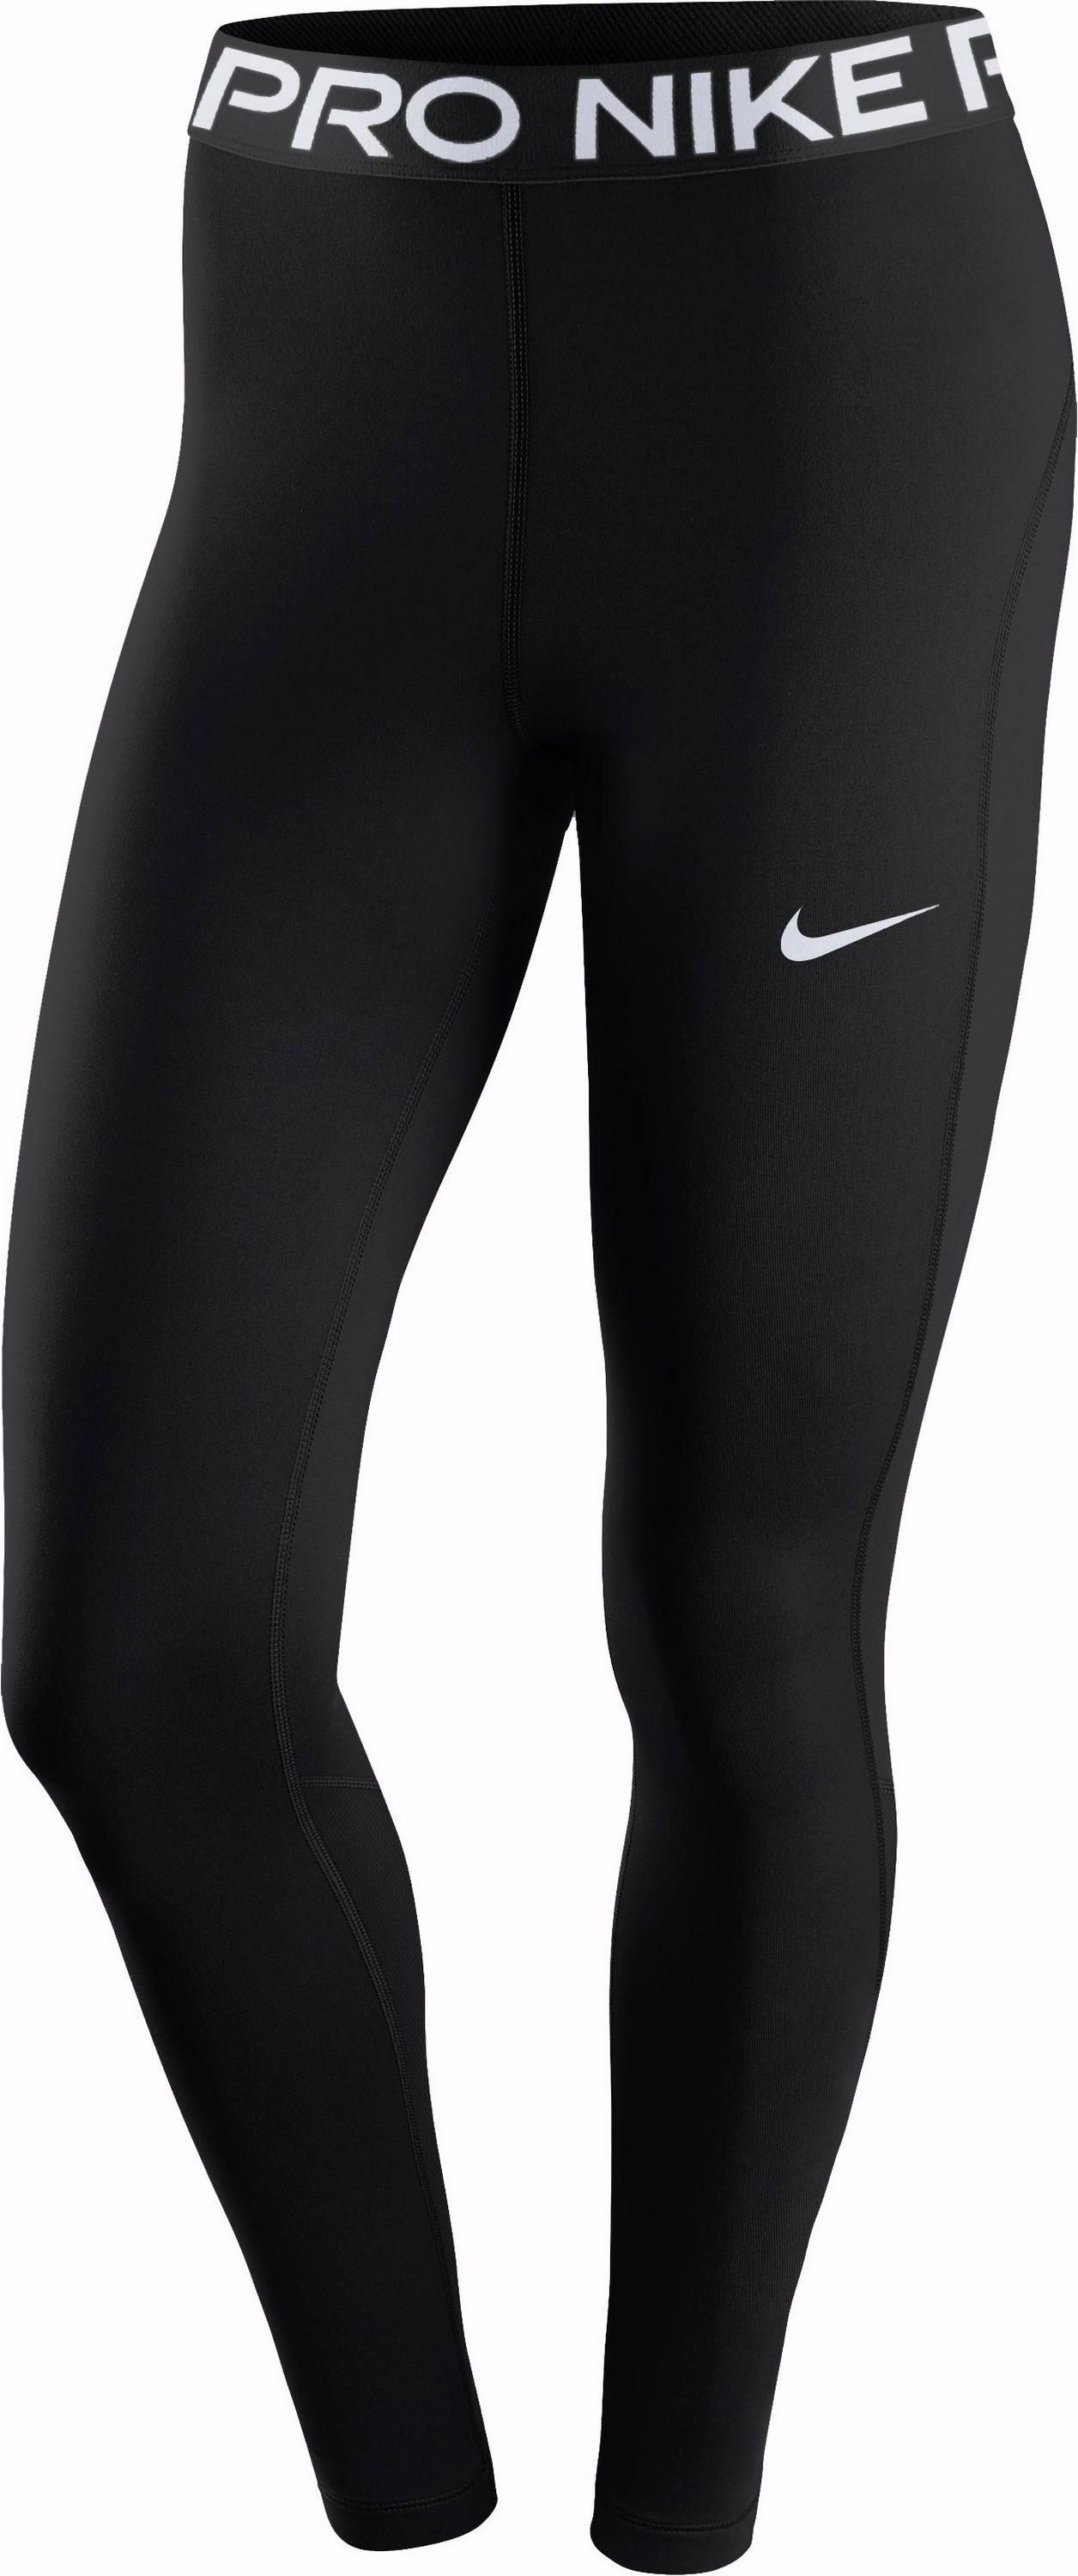 Nike PRO 365 Tights Damen in black-white, Größe XL